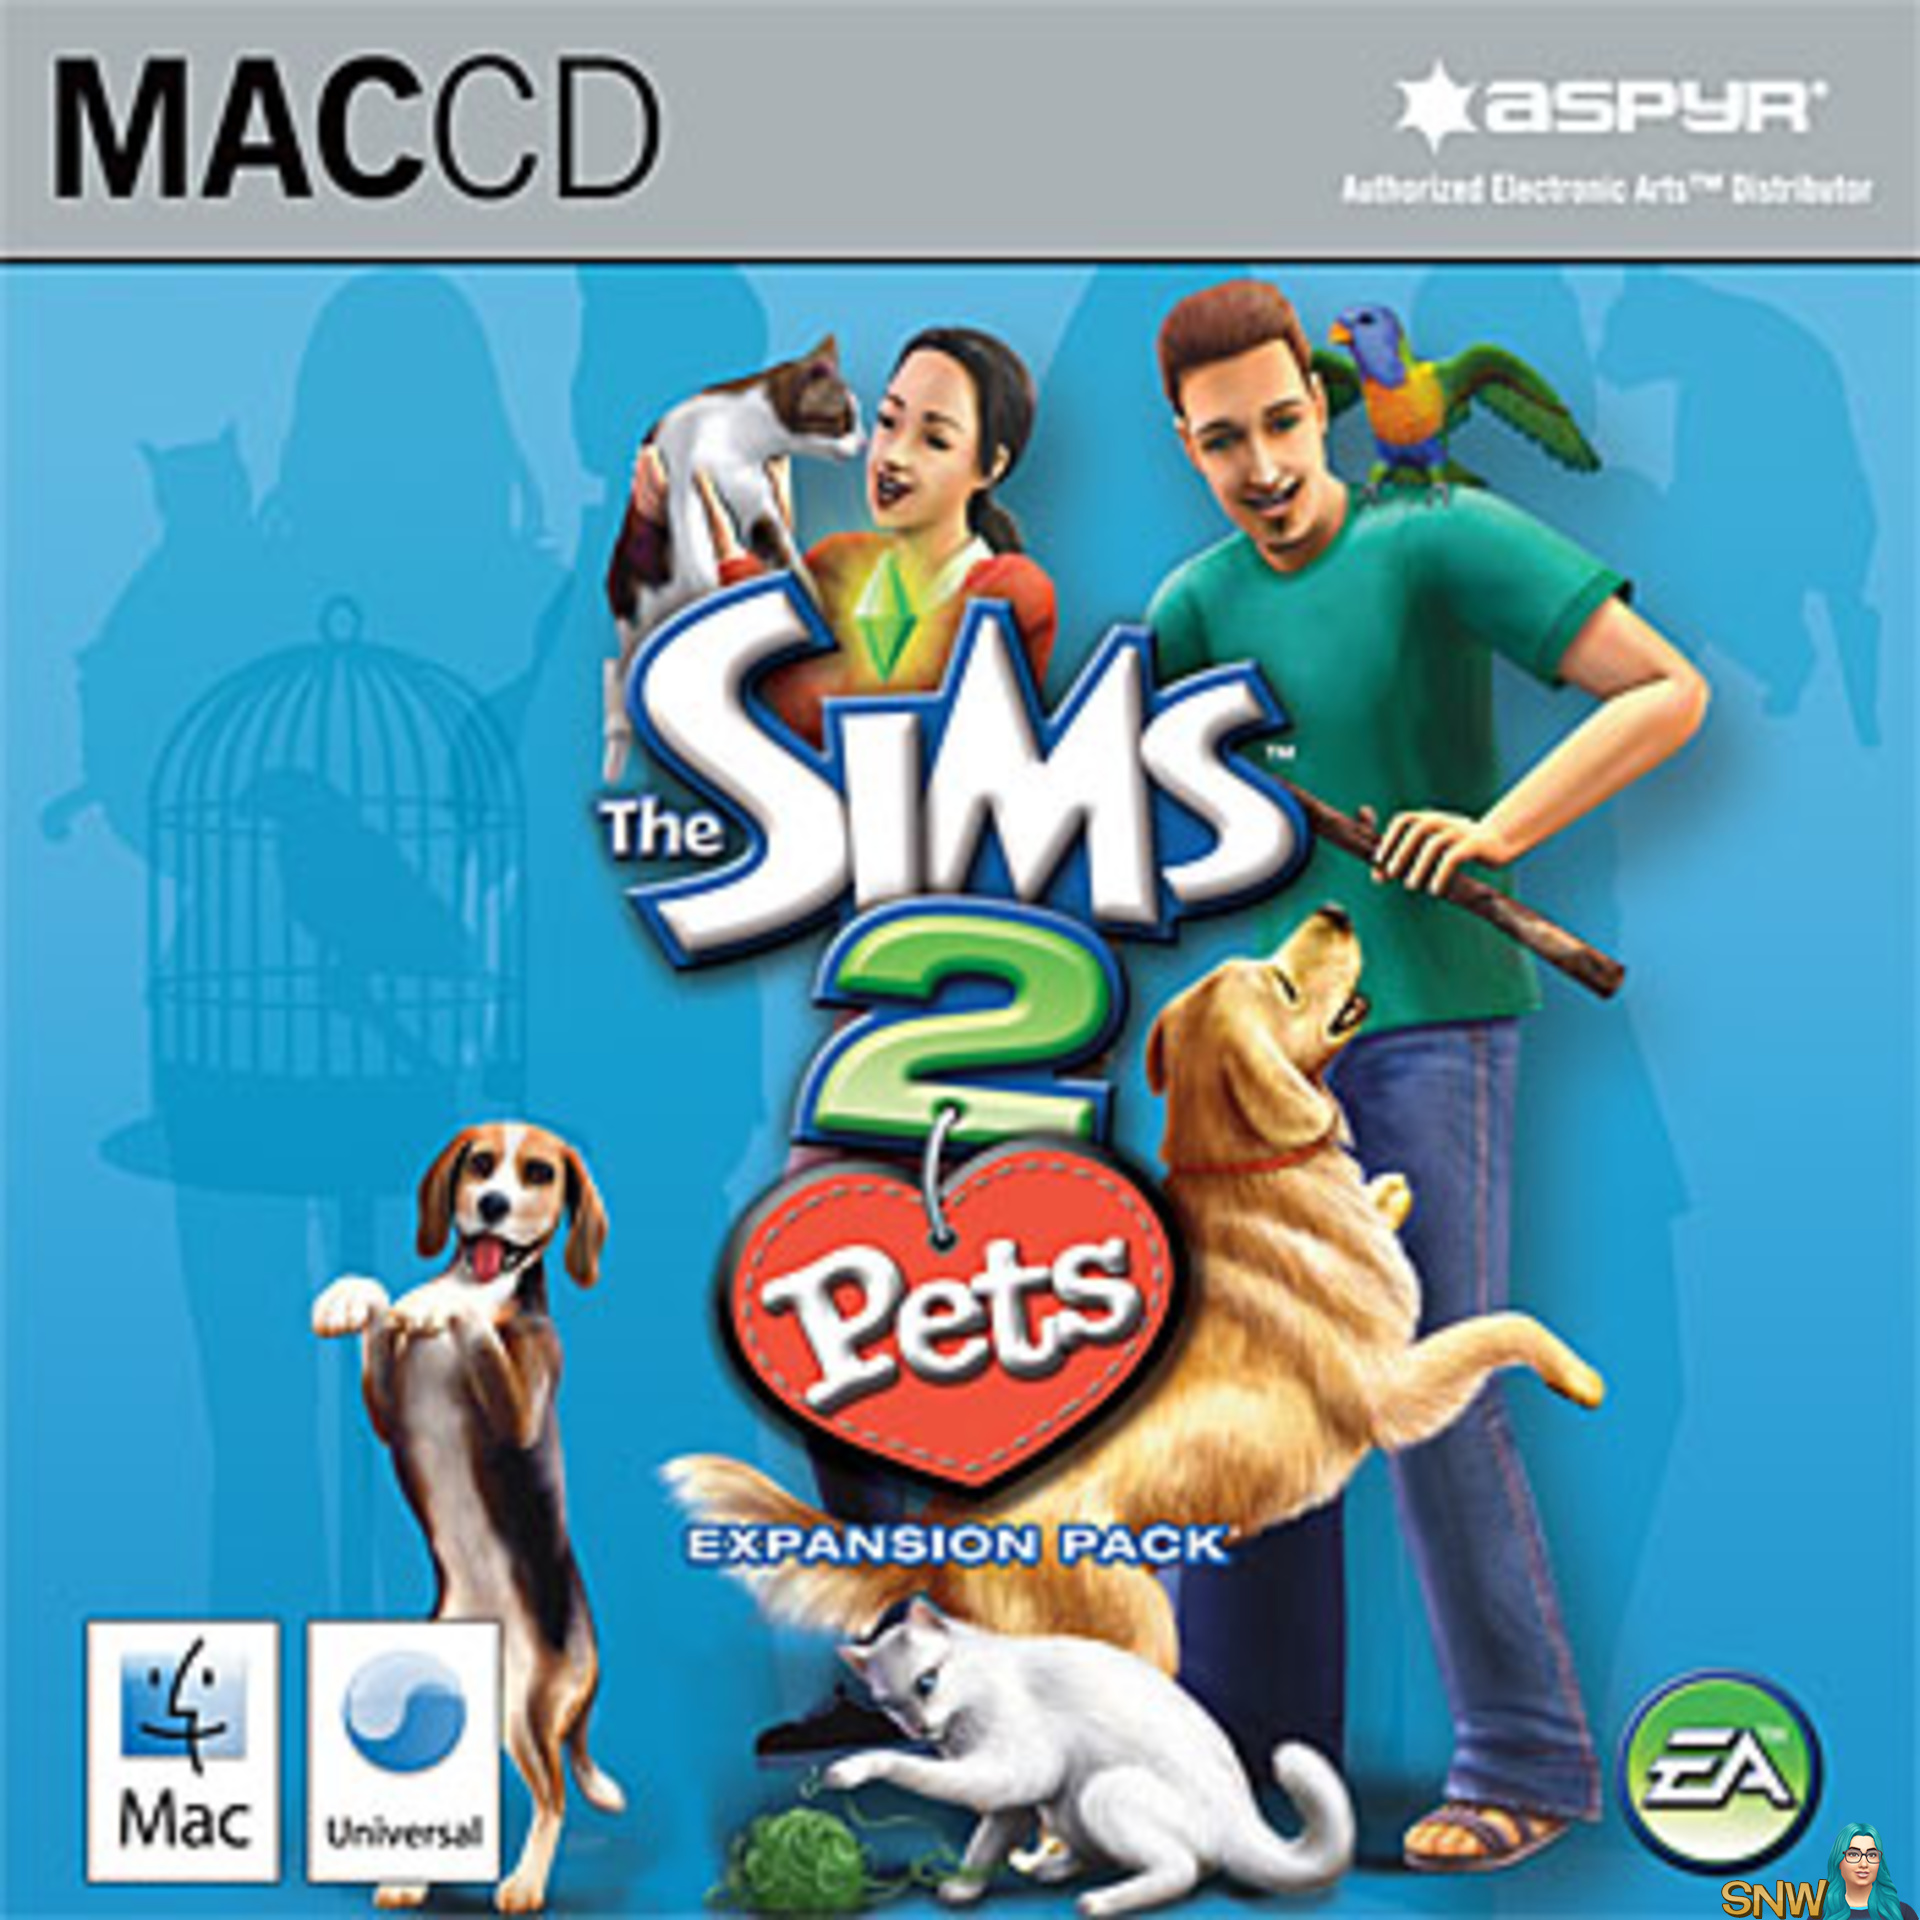 Игра pets 2. Симс 2 петс диск. The SIMS 2: Pets (для игровых приставок). The SIMS 2 питомцы диск DVD. The SIMS 2: питомцы.